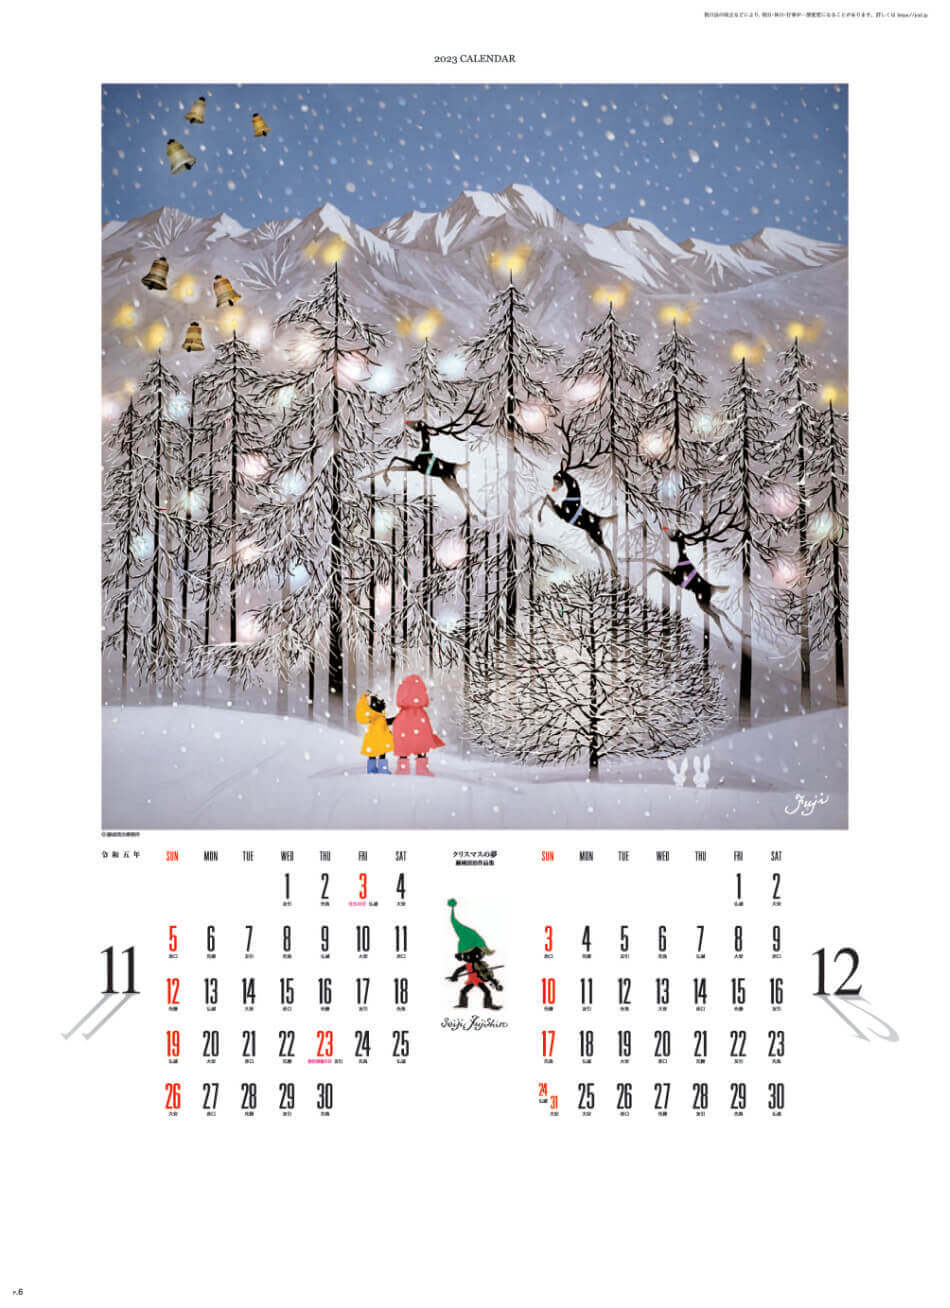 11/12月 クリスマスの夢 遠い日の風景から(影絵) 藤城清治 2023年カレンダーの画像